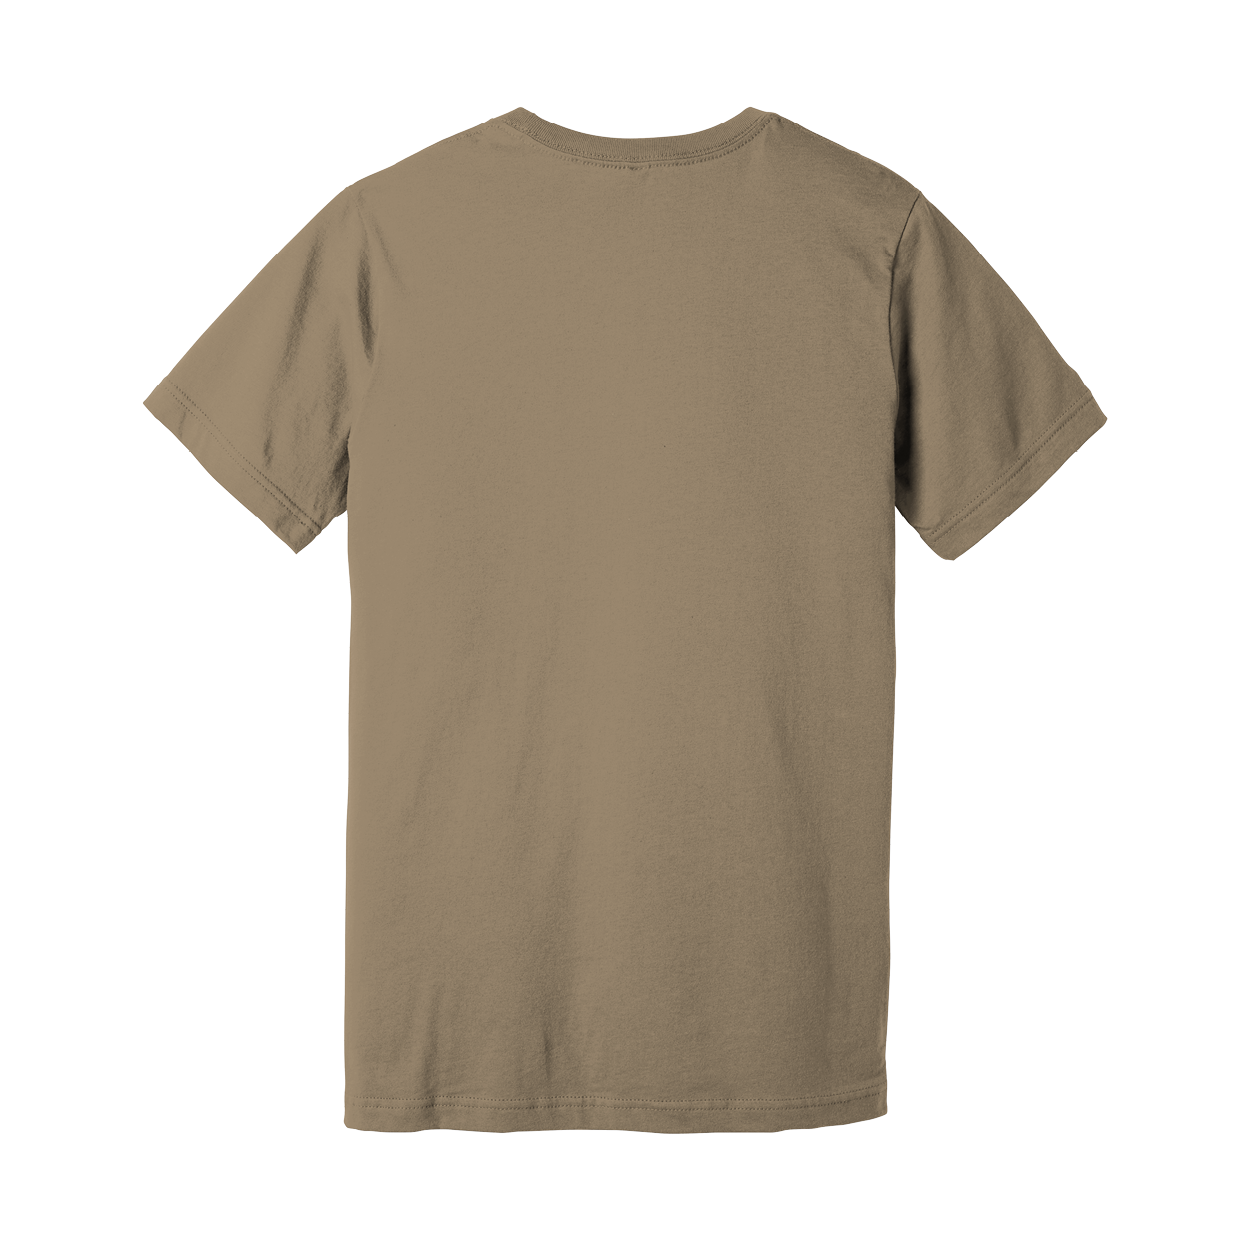 JHerbalTeas Tan T-Shirt